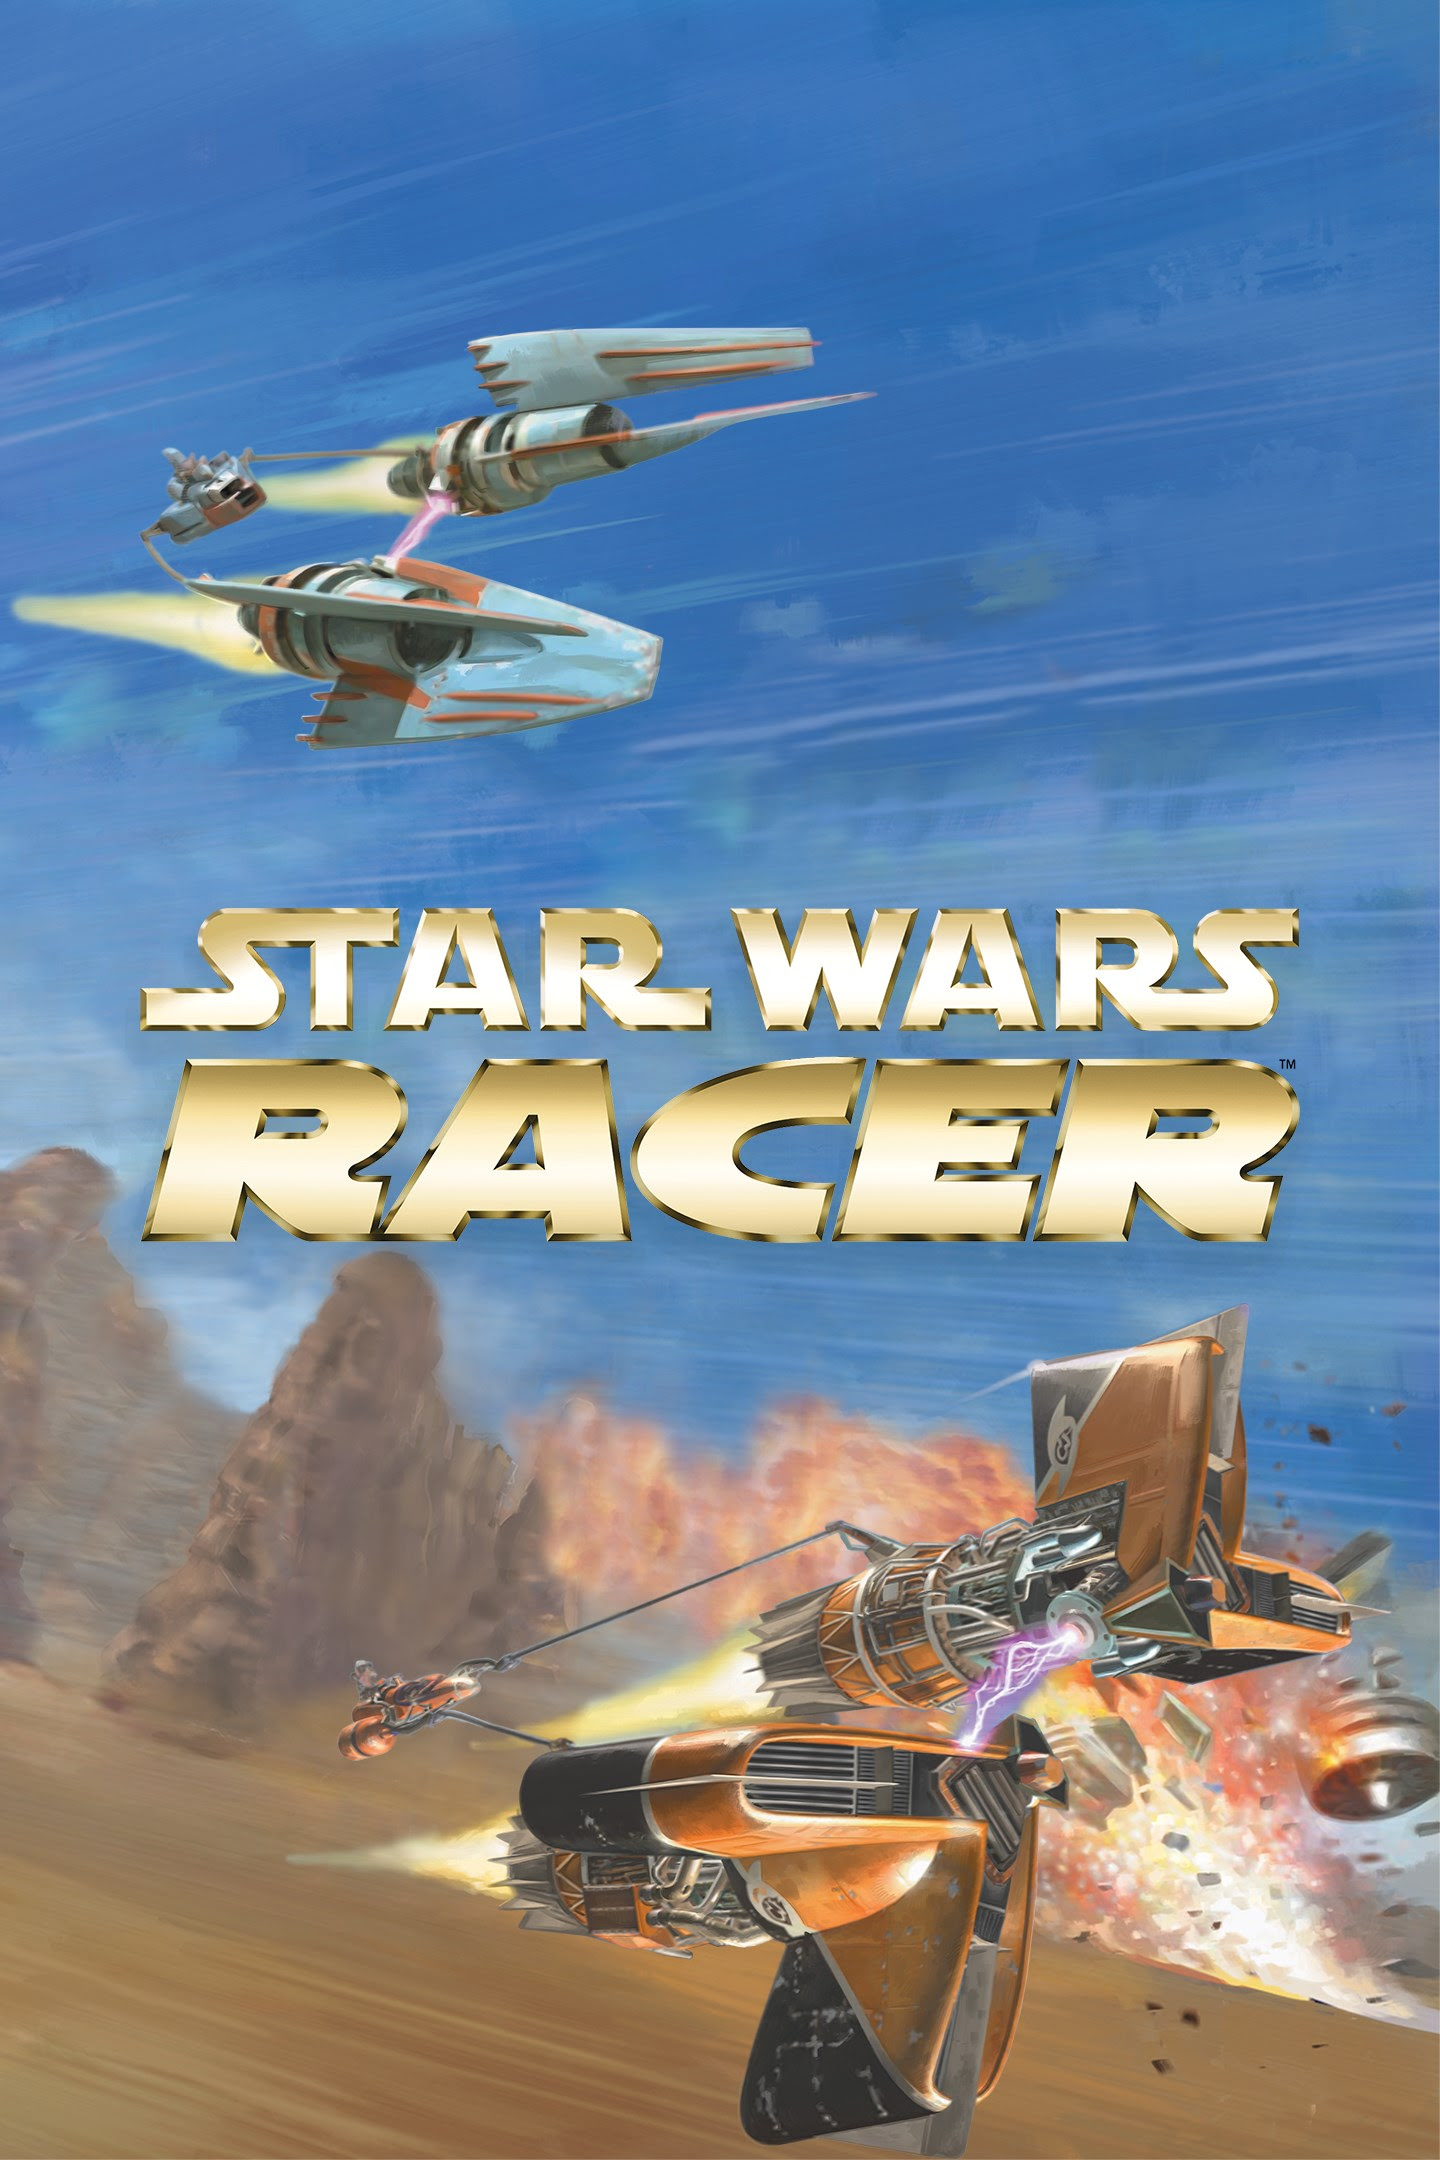 STAR WARS™ Episode I Racer.